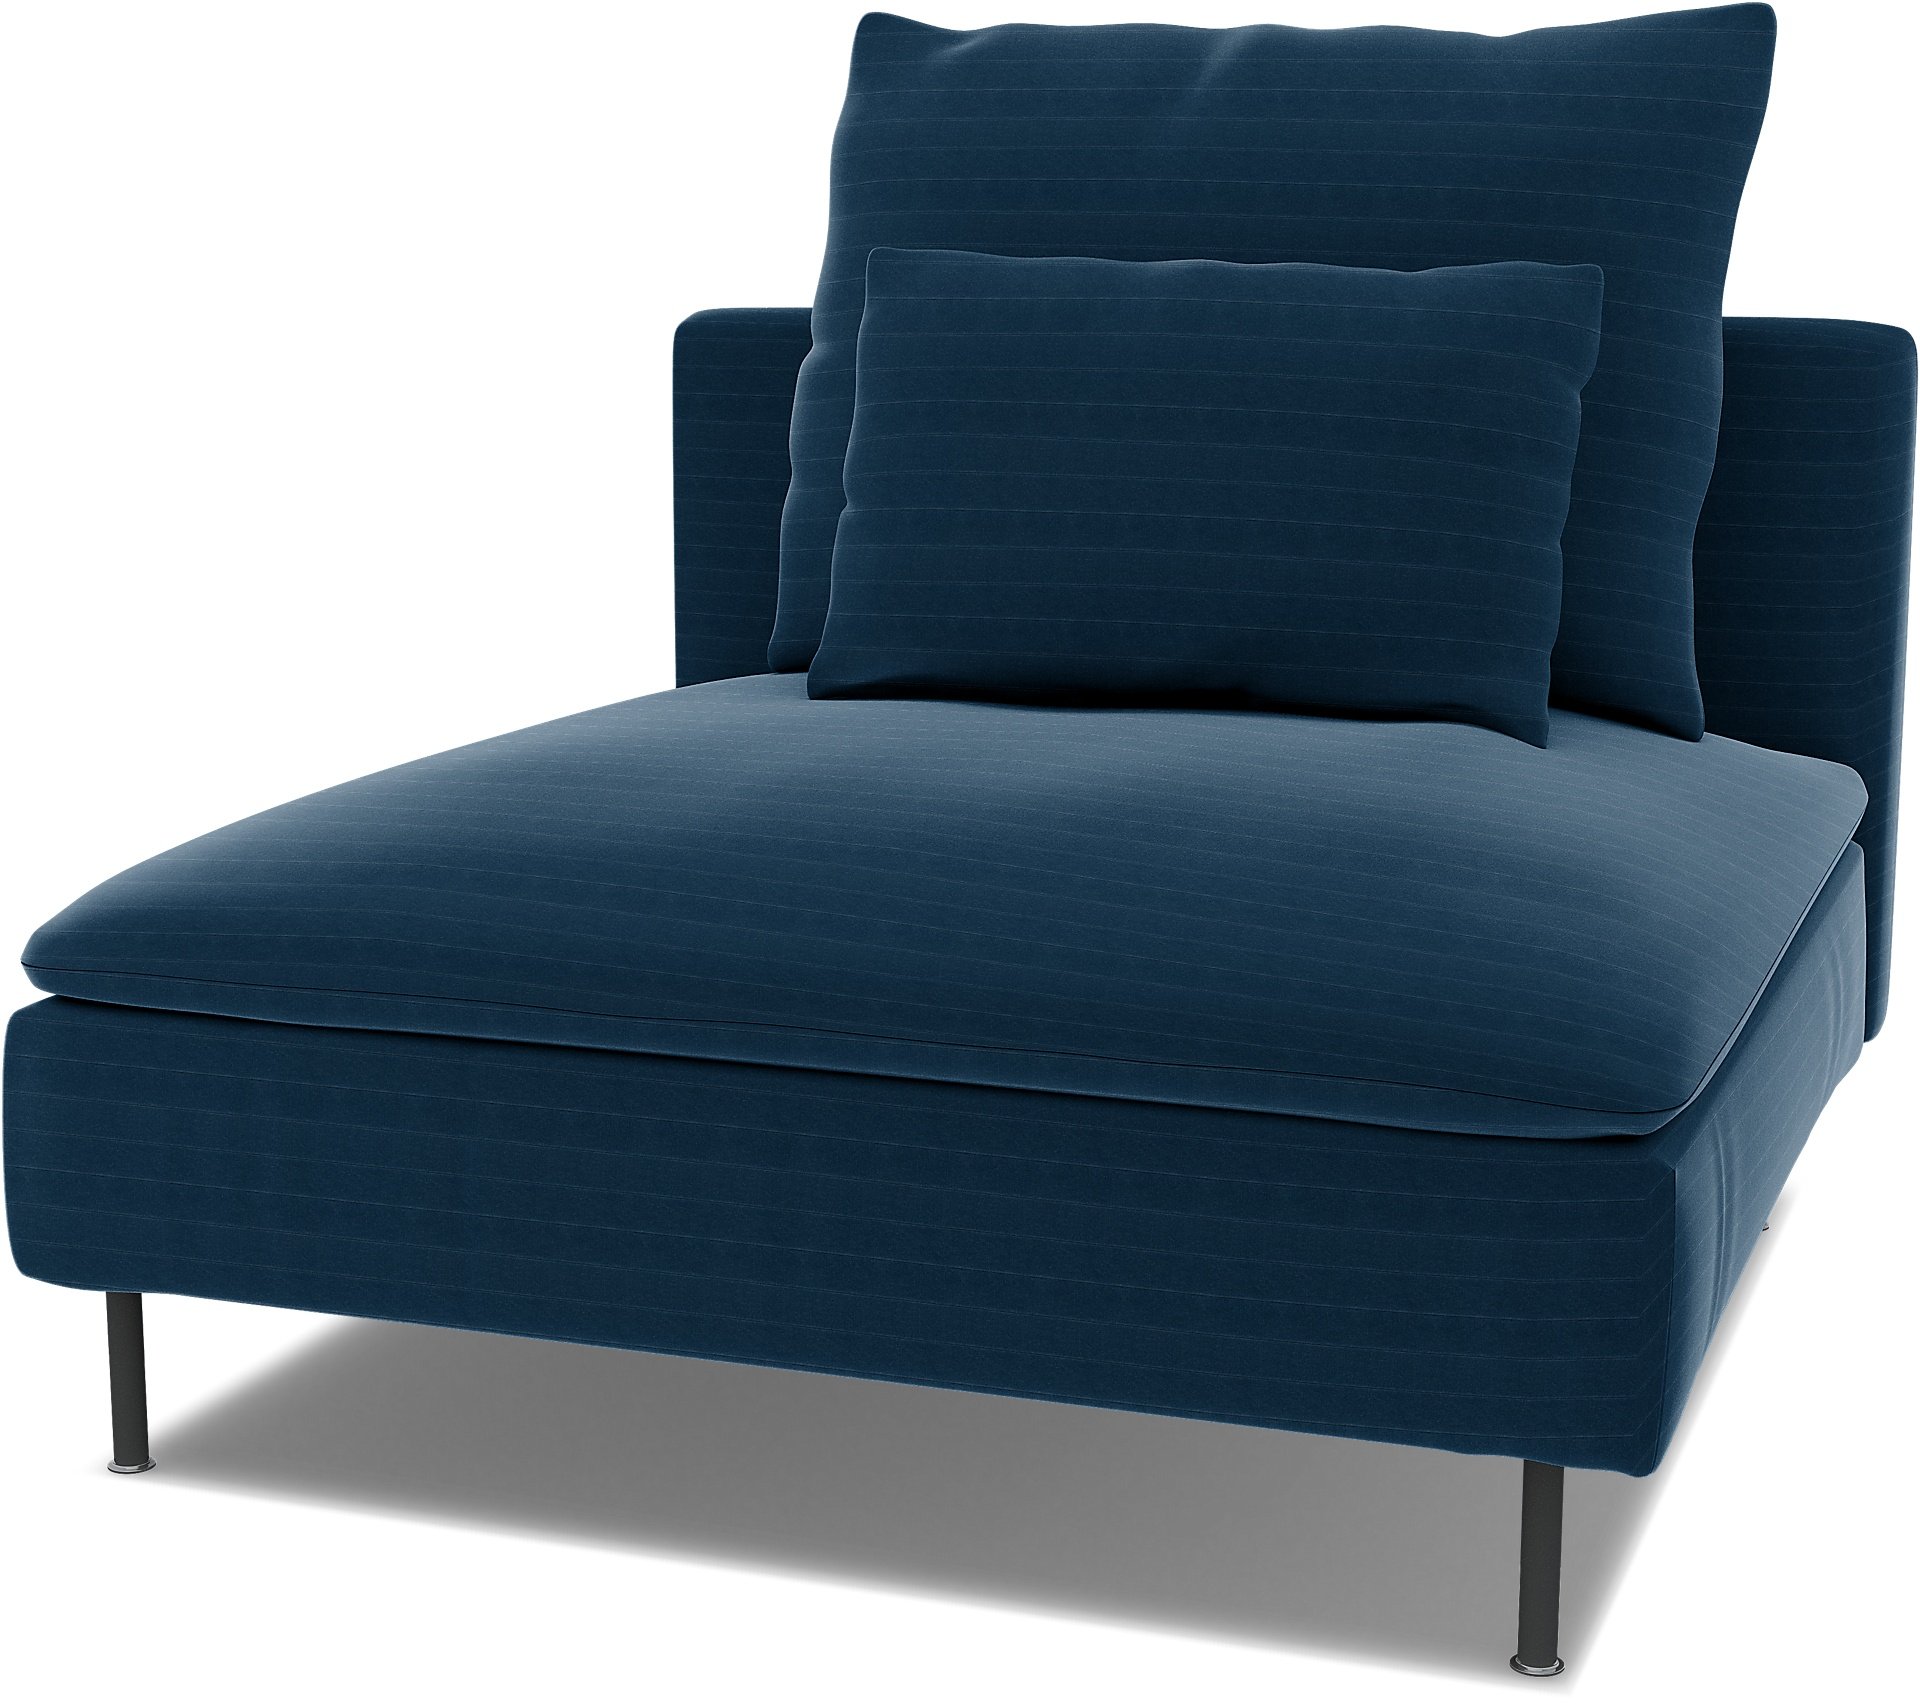 Spare seat cushion cover for SODERHAMN 1 SEAT SECTION , Denim Blue, Velvet - Bemz